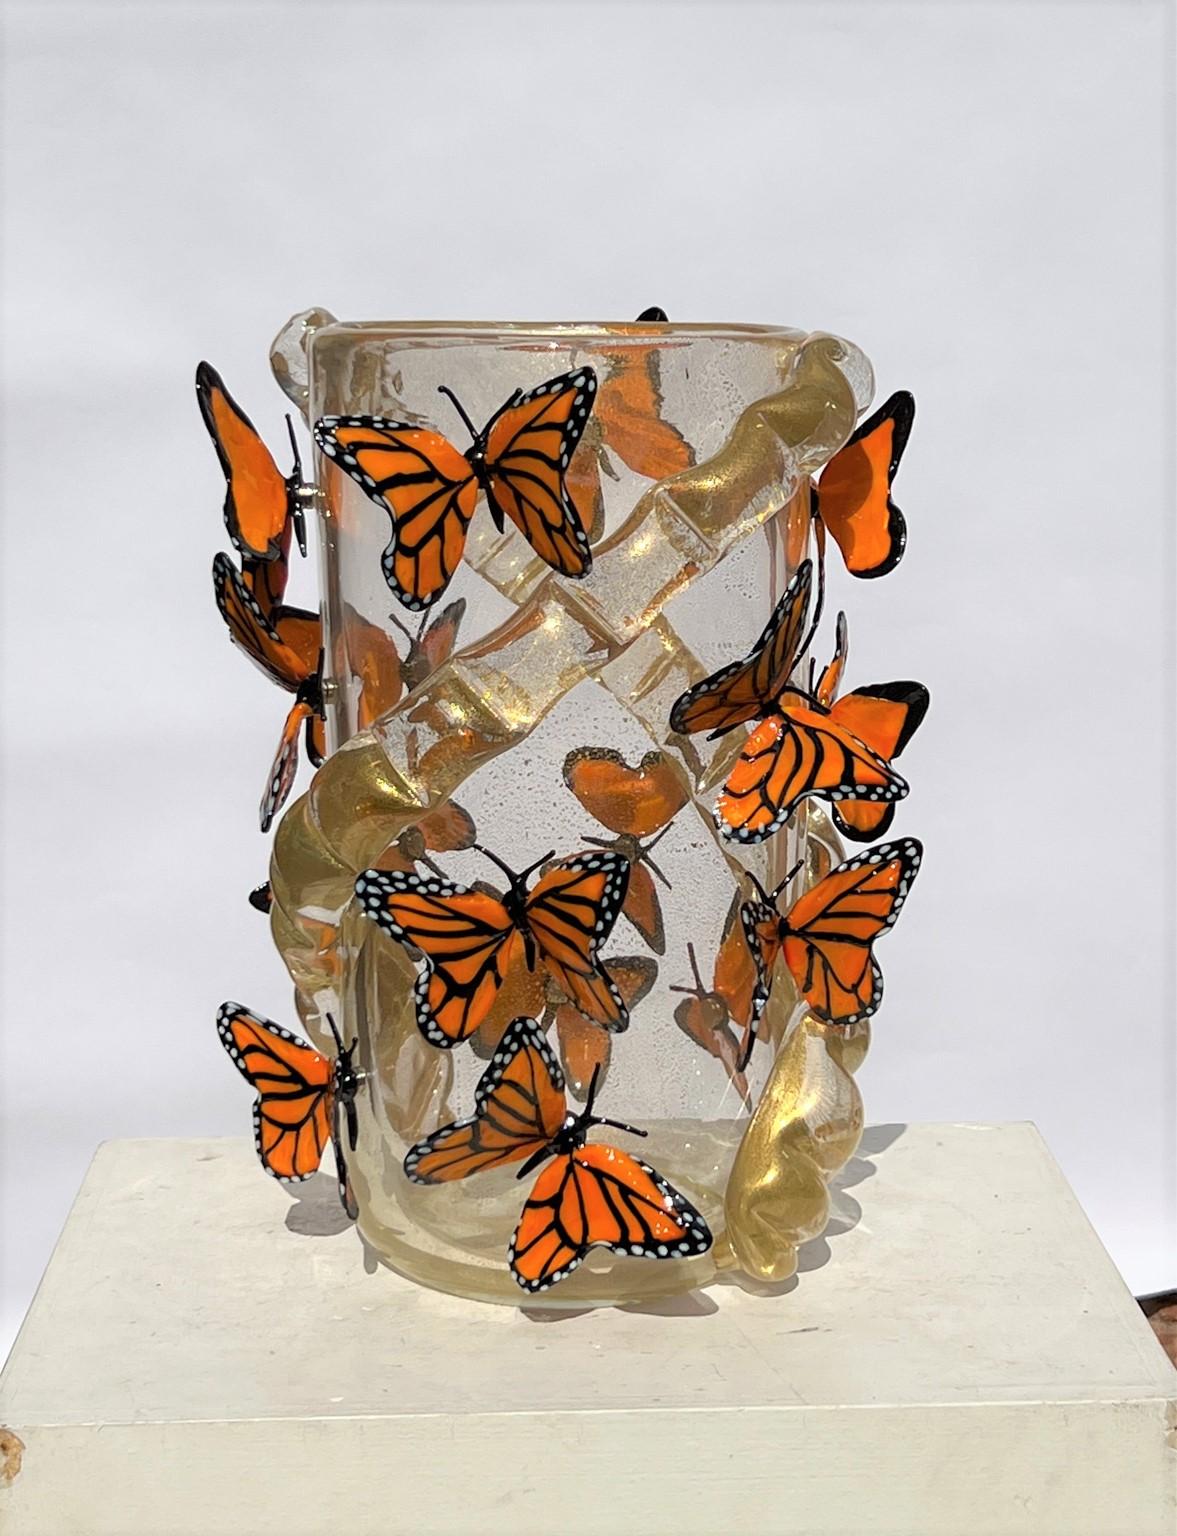 Vase en verre soufflé de Murano fait à la main avec de véritables feuilles d'or 24kt et des papillons monarques attachés avec un aimant. Le vase contient 16 papillons monarques.
Vase moderne idéal pour un environnement moderne et rustique